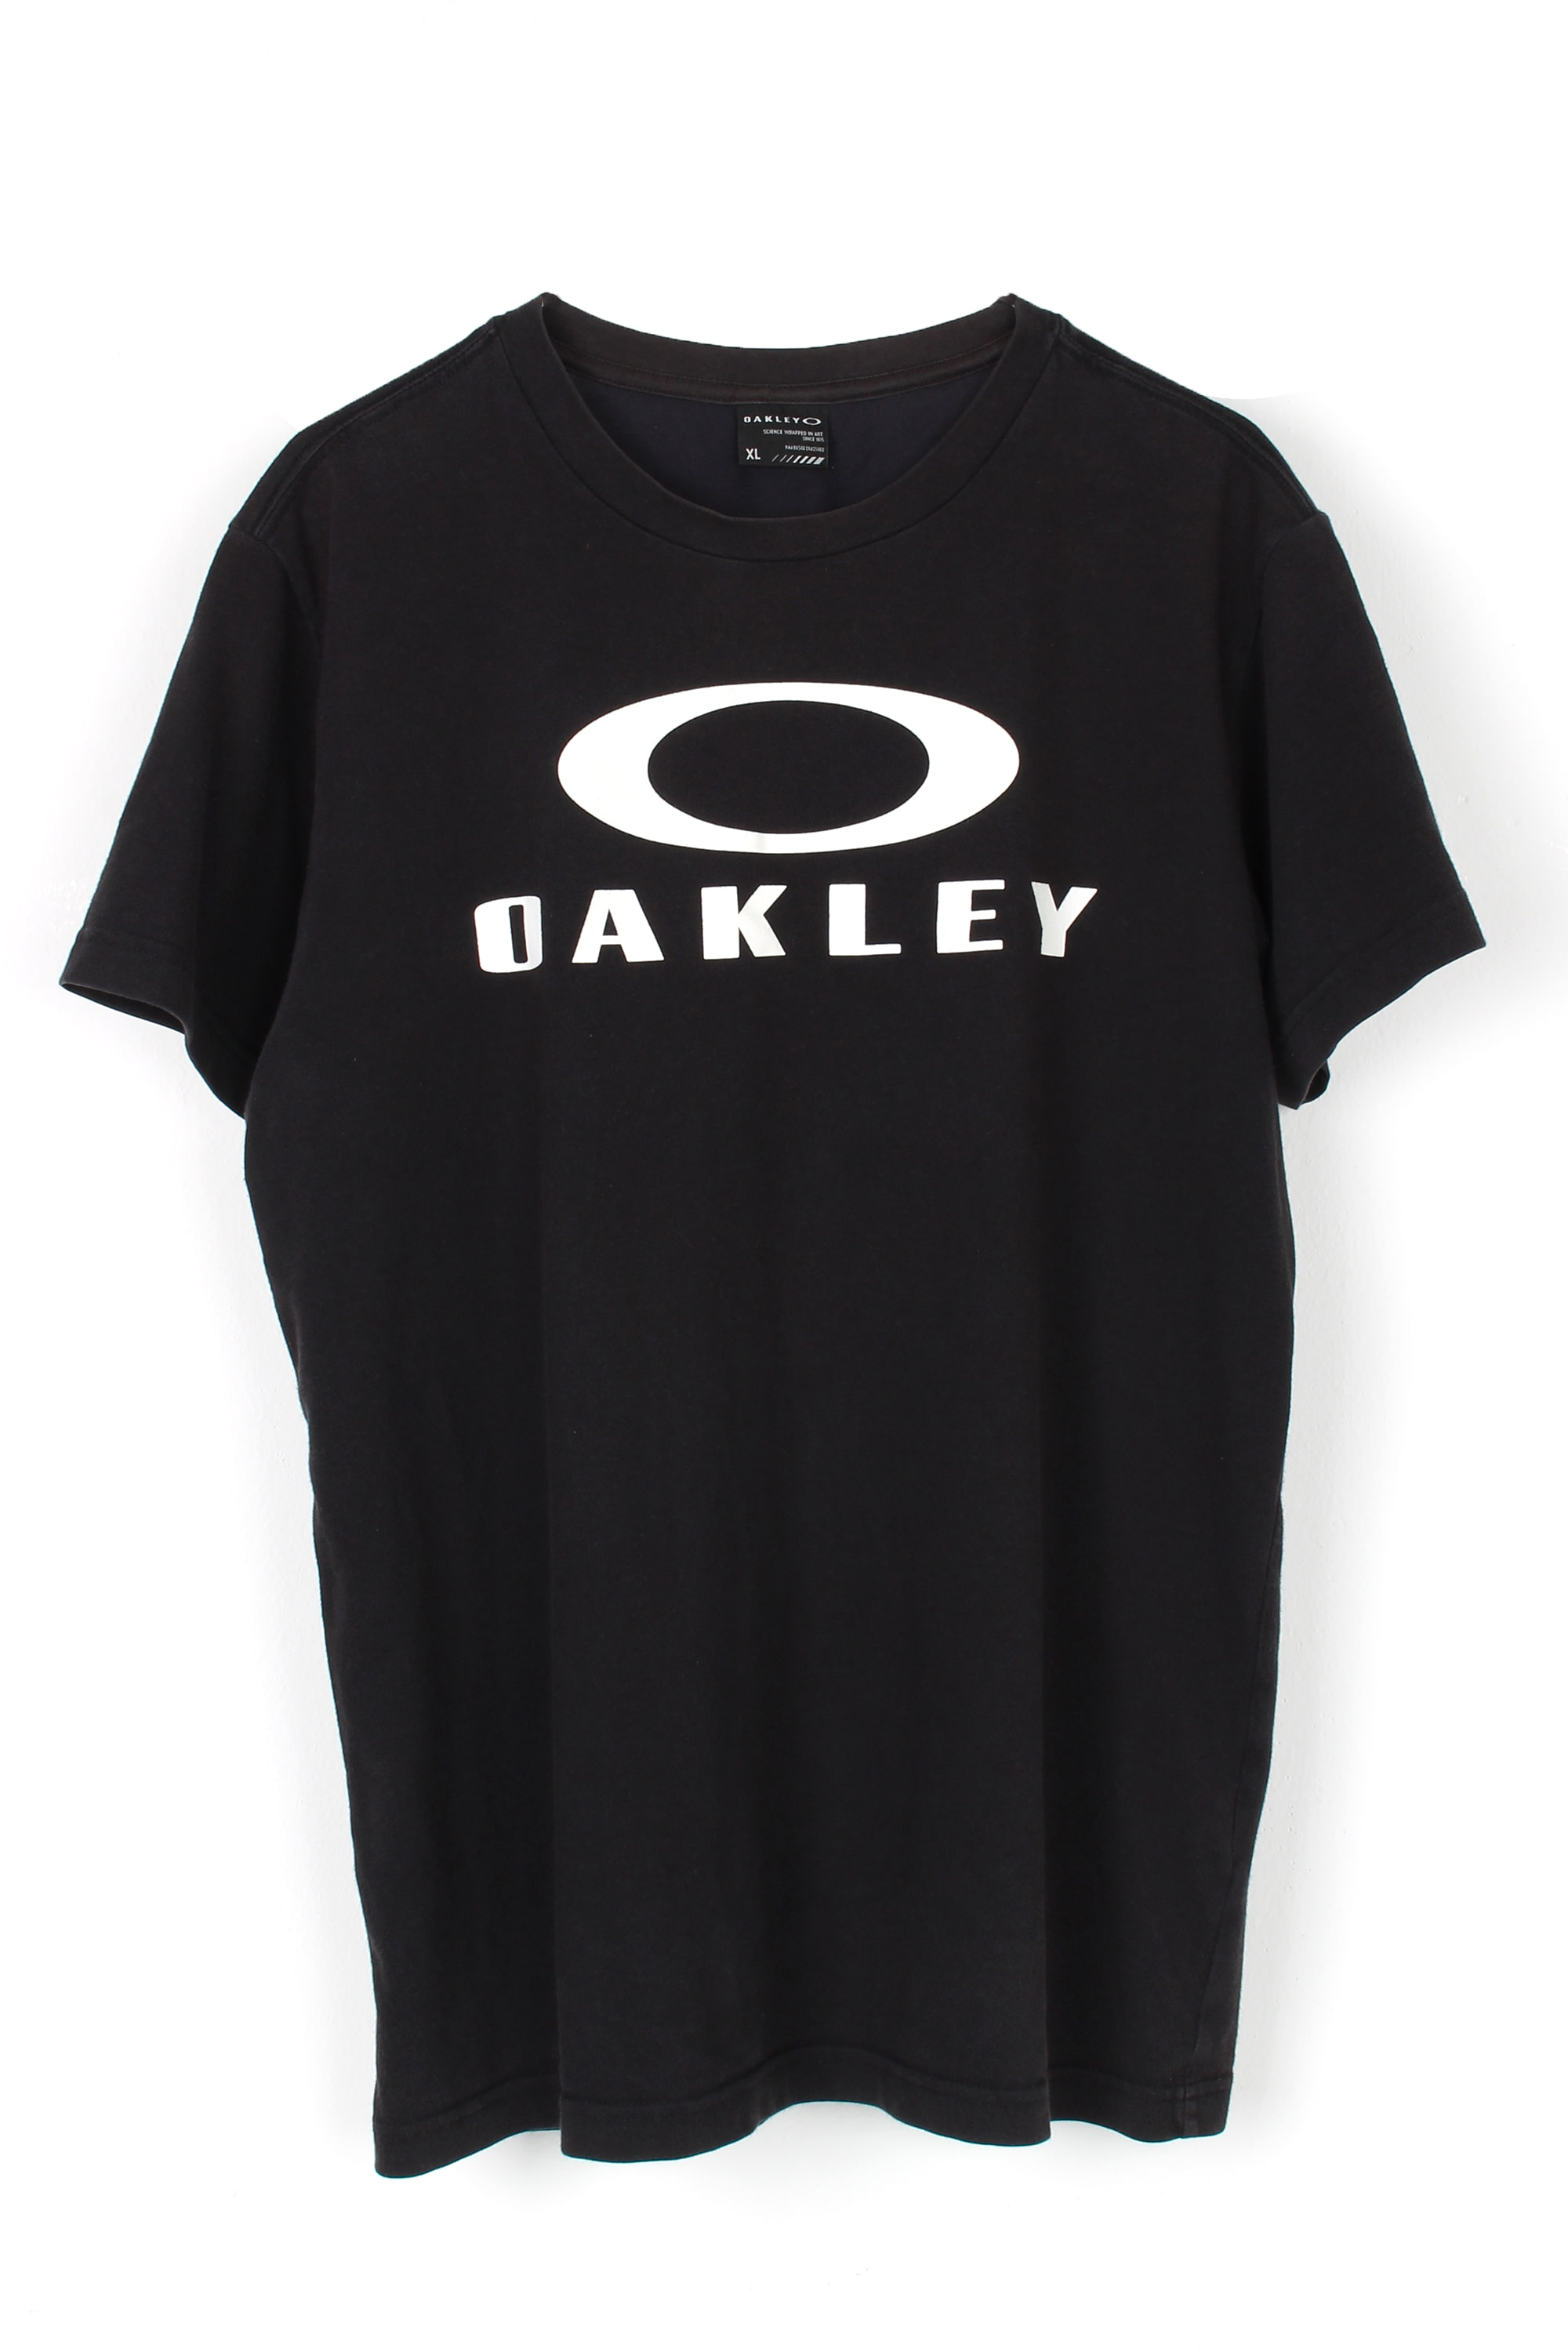 OAKLEY Logo Tee